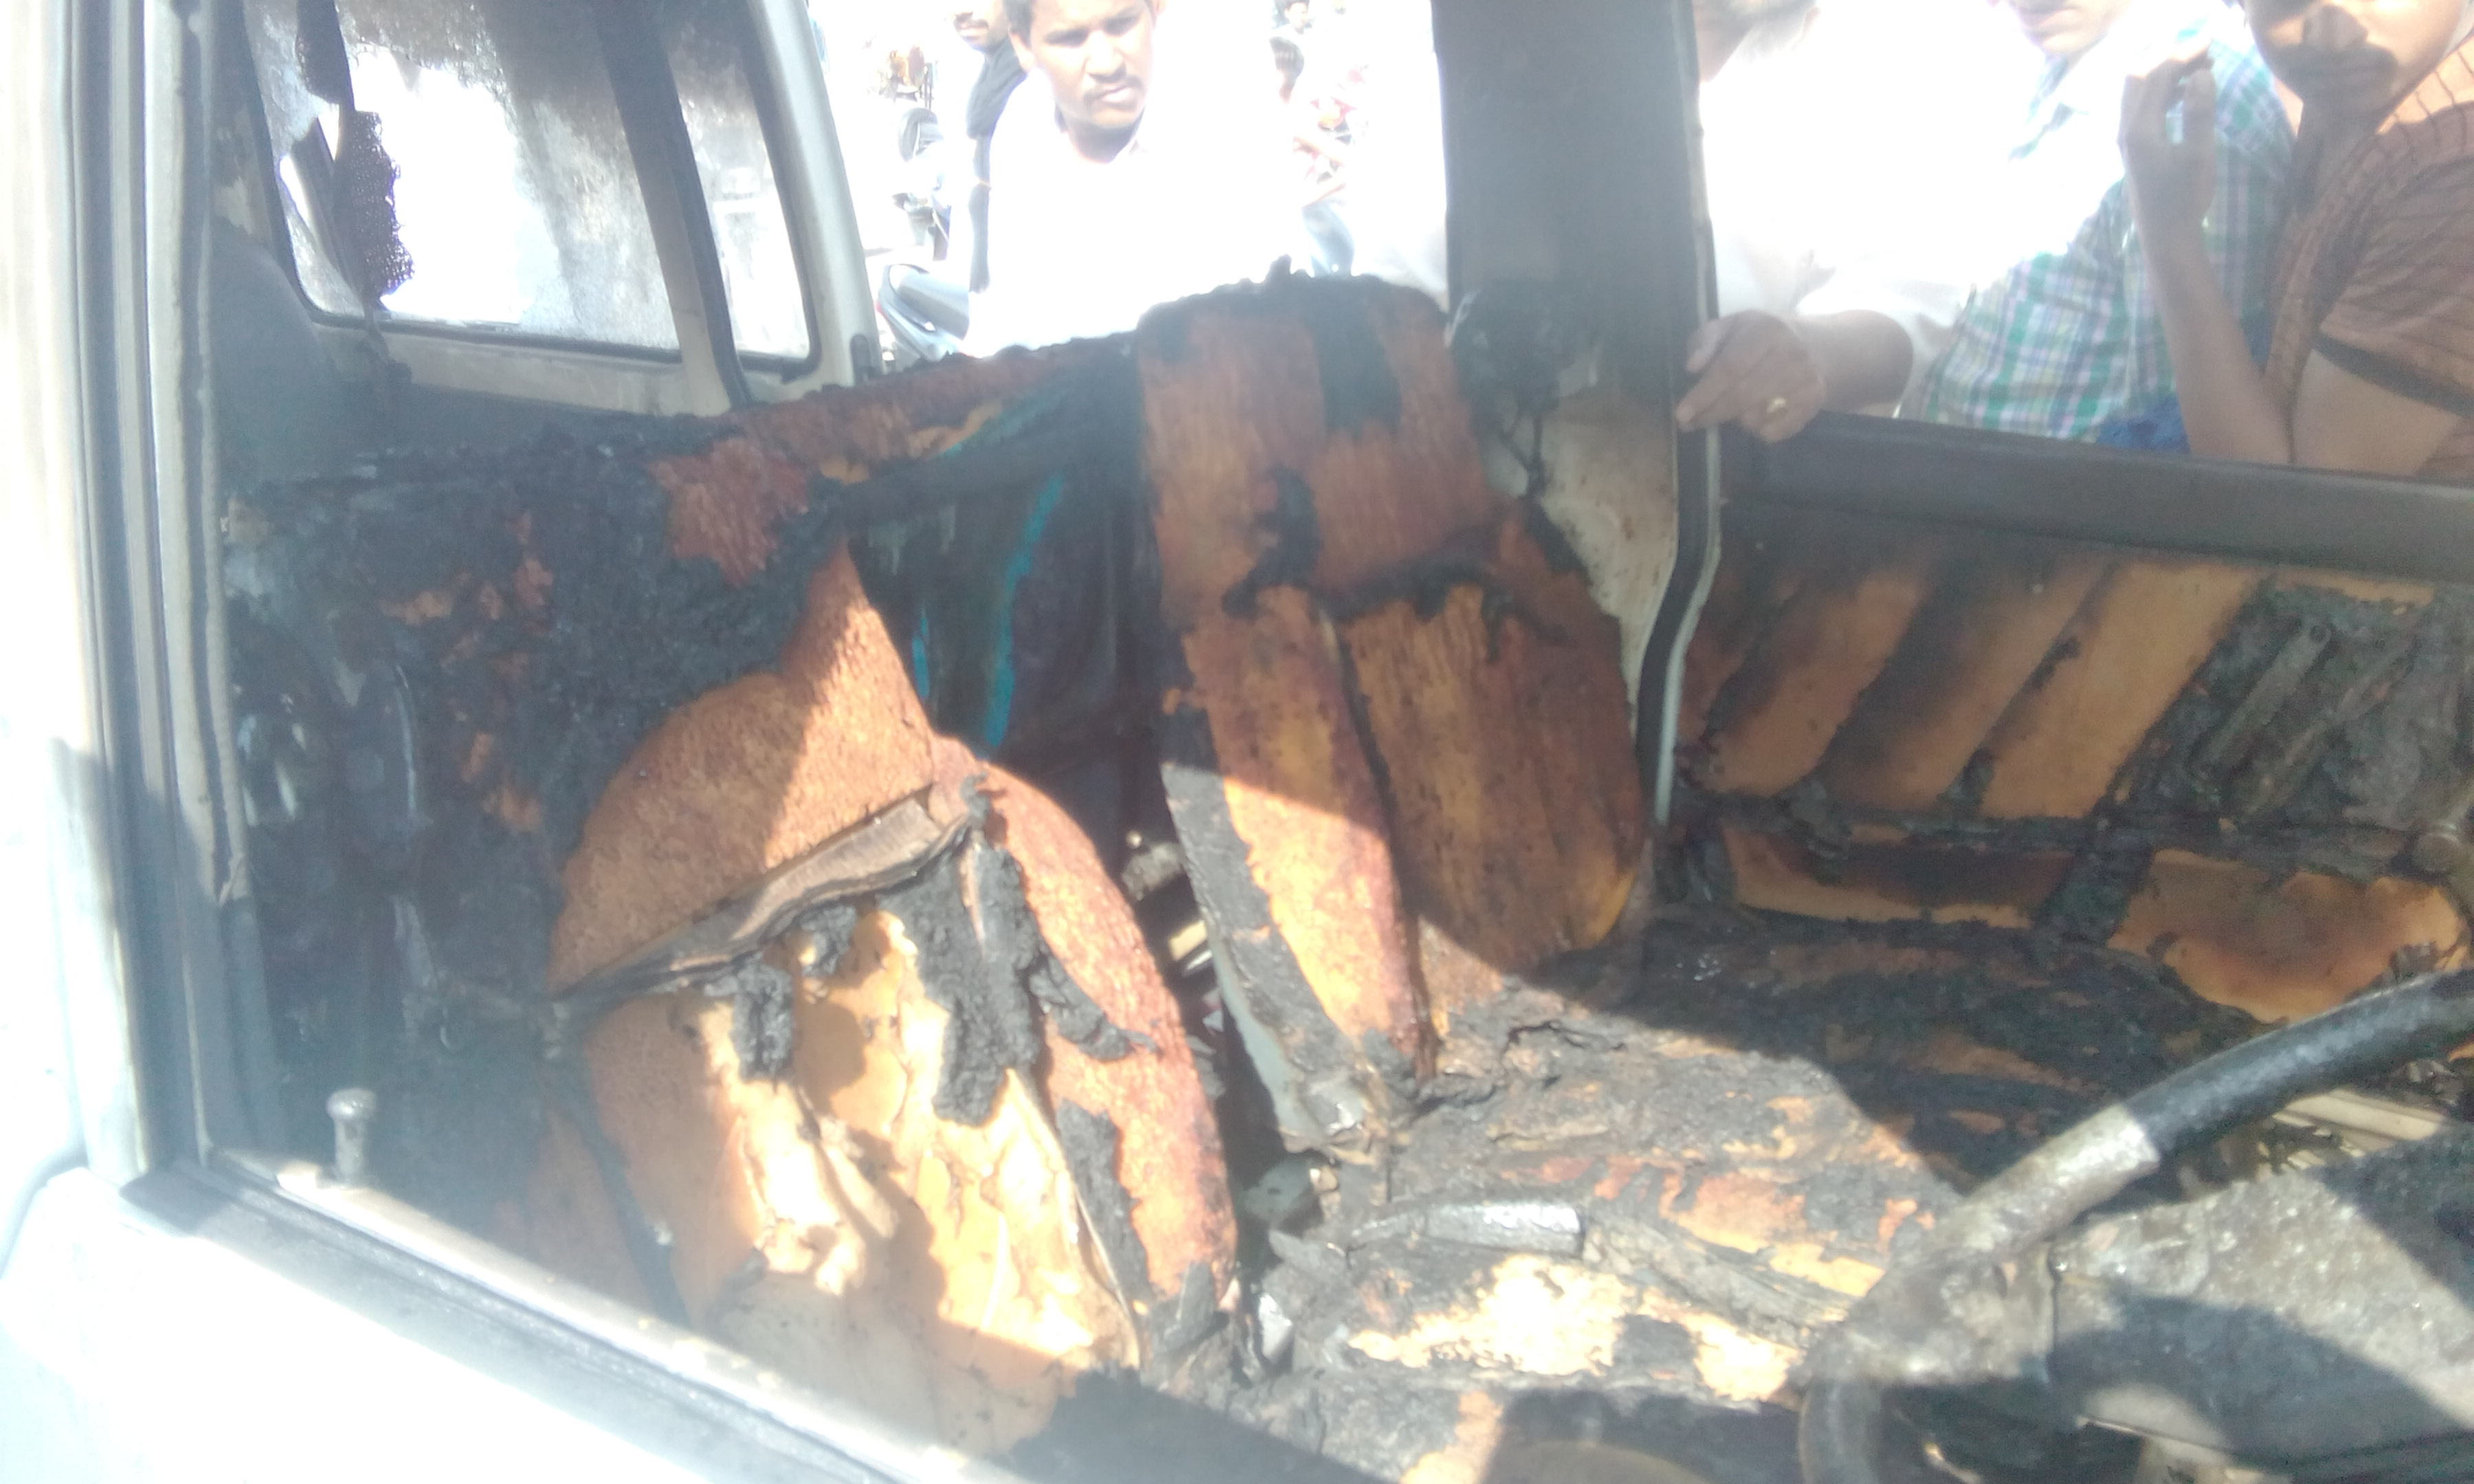 Fire, Maruti Van, Scorched, Injured, Punjab